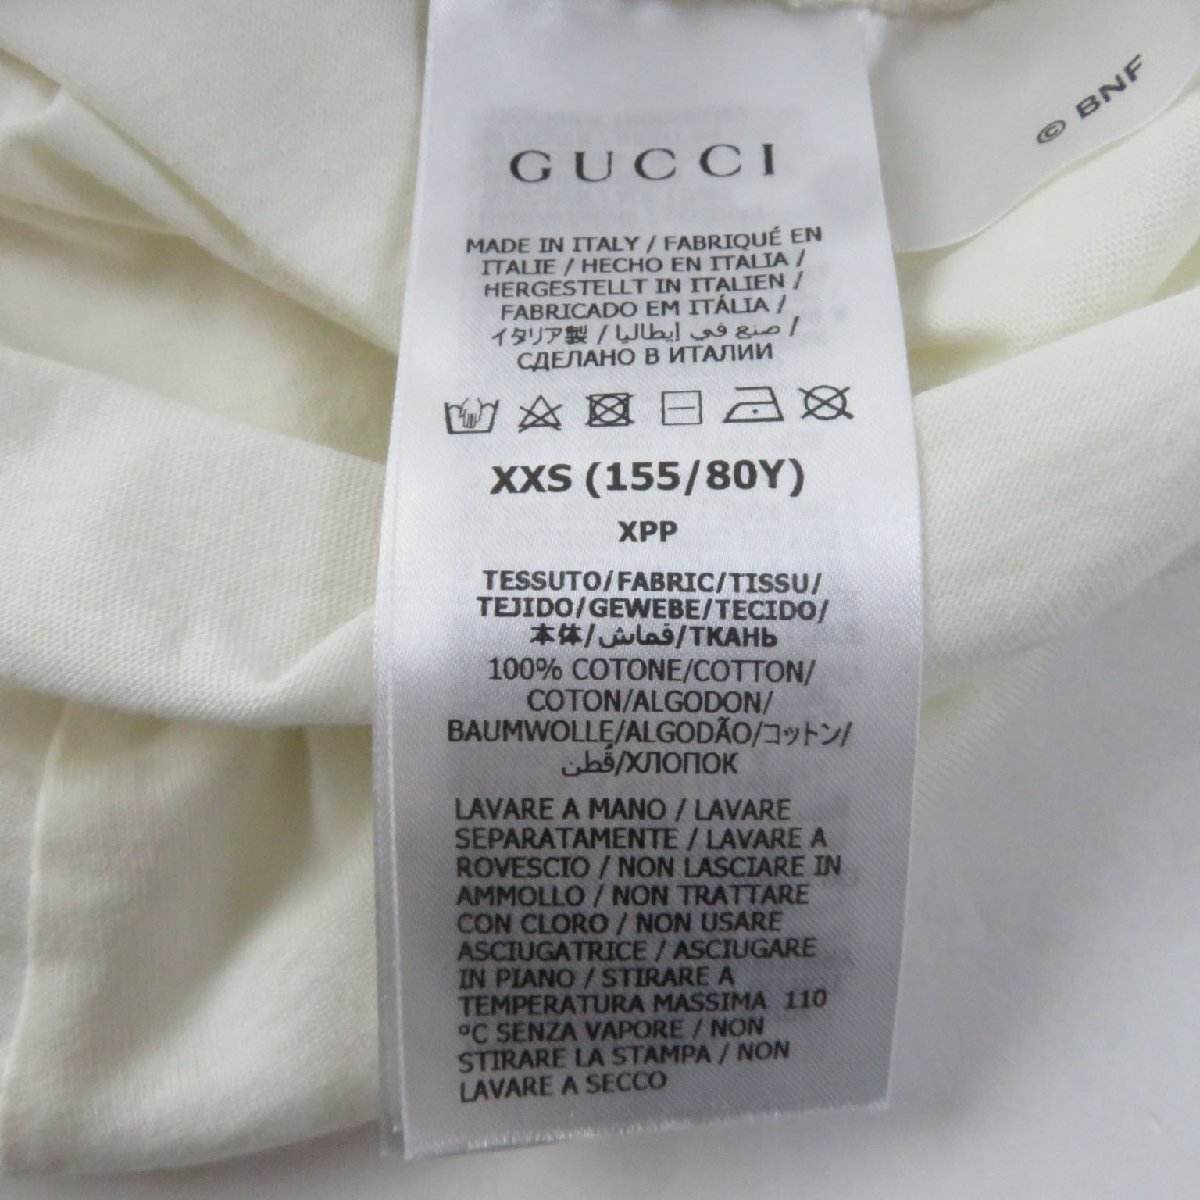  превосходный товар *GUCCI Gucci 615044 хлопок 100%.... принт дизайн логотипа вырез лодочкой короткий рукав футболка многоцветный XXS сделано в Италии стандартный товар 